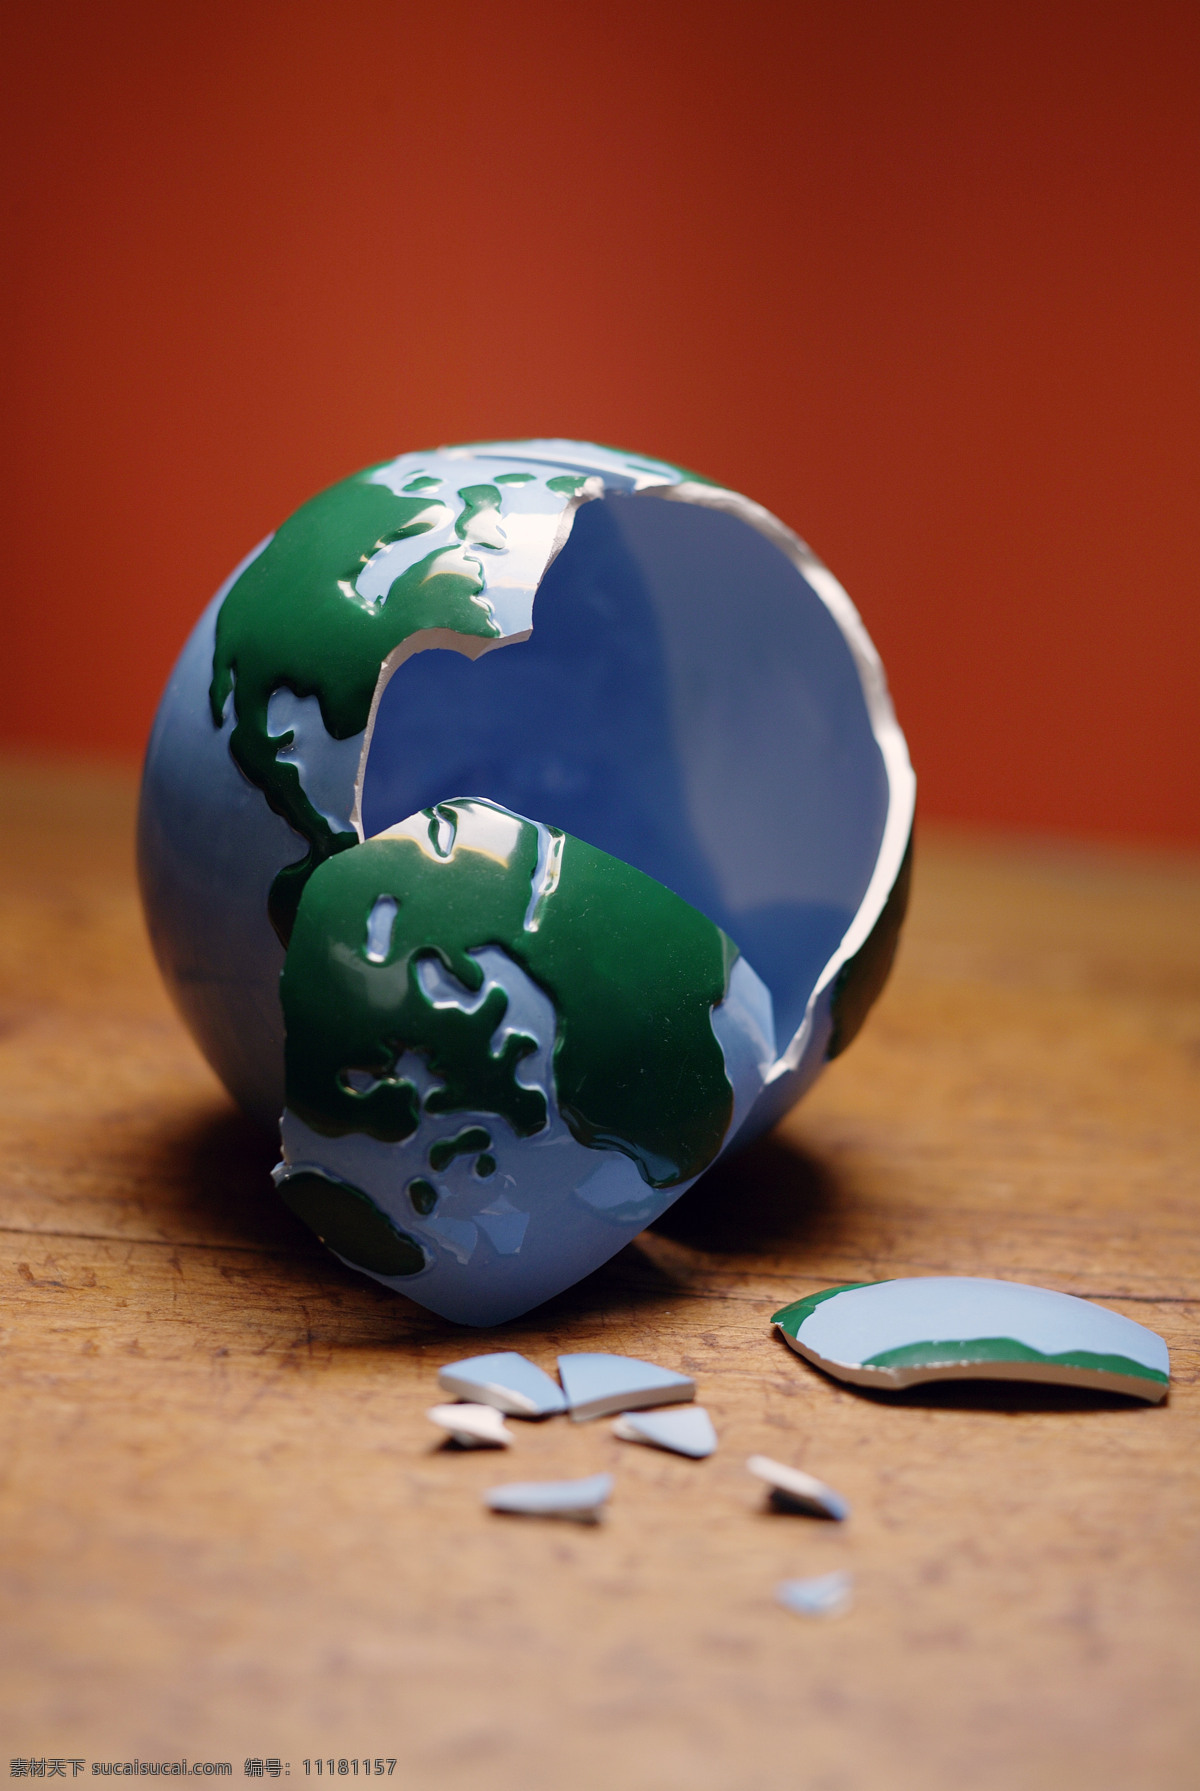 破碎 地球 特写 商务 金融贸易 全球商务导航 创意 抽象 地球仪 瓷器 碎片 摄影图 高清图片 地球图片 环境家居